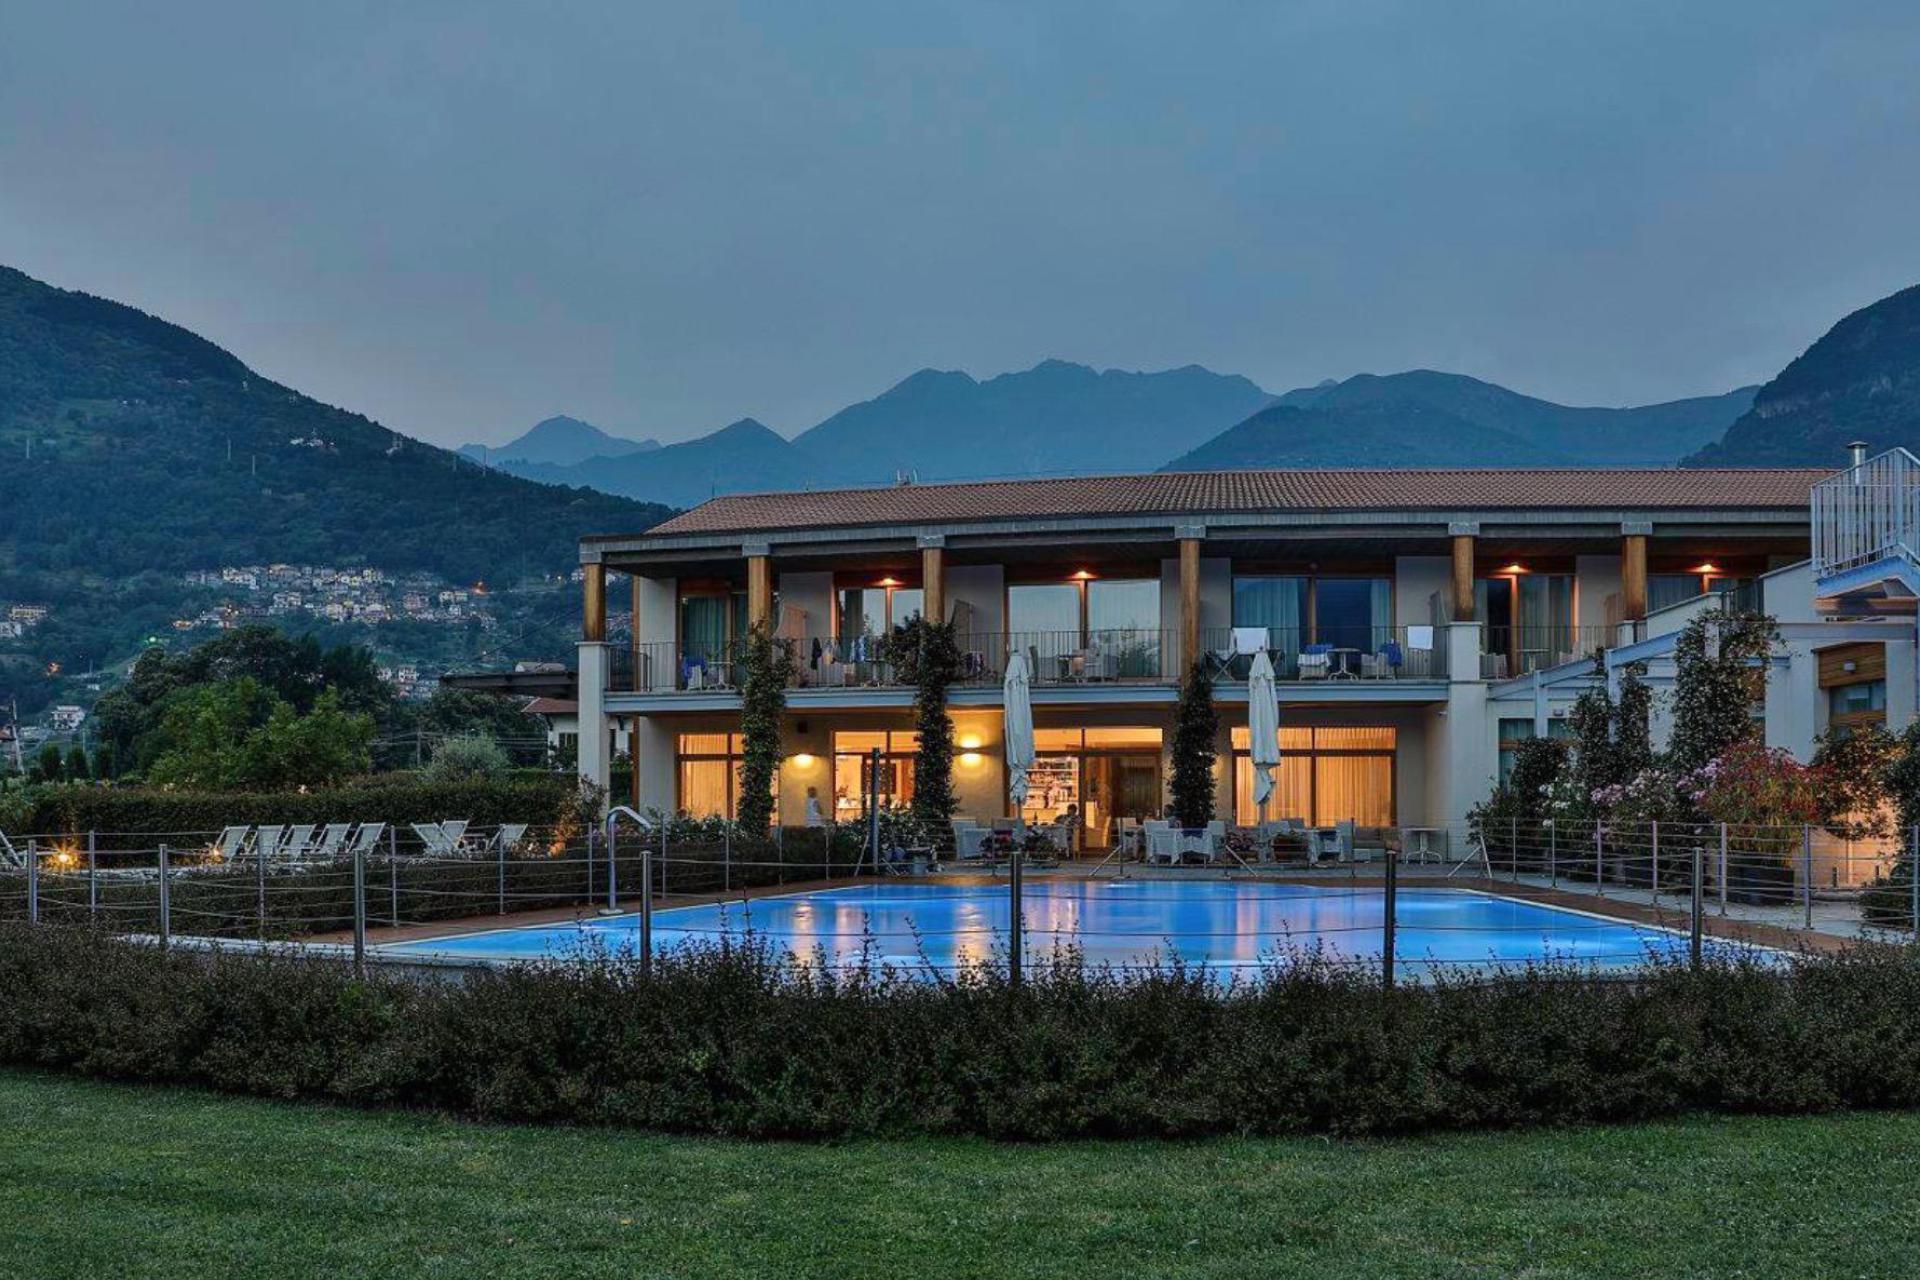 Agriturismo Lago di Como e lago di Garda Piccolo hotel di campagna in bella posizione sul lago di Como